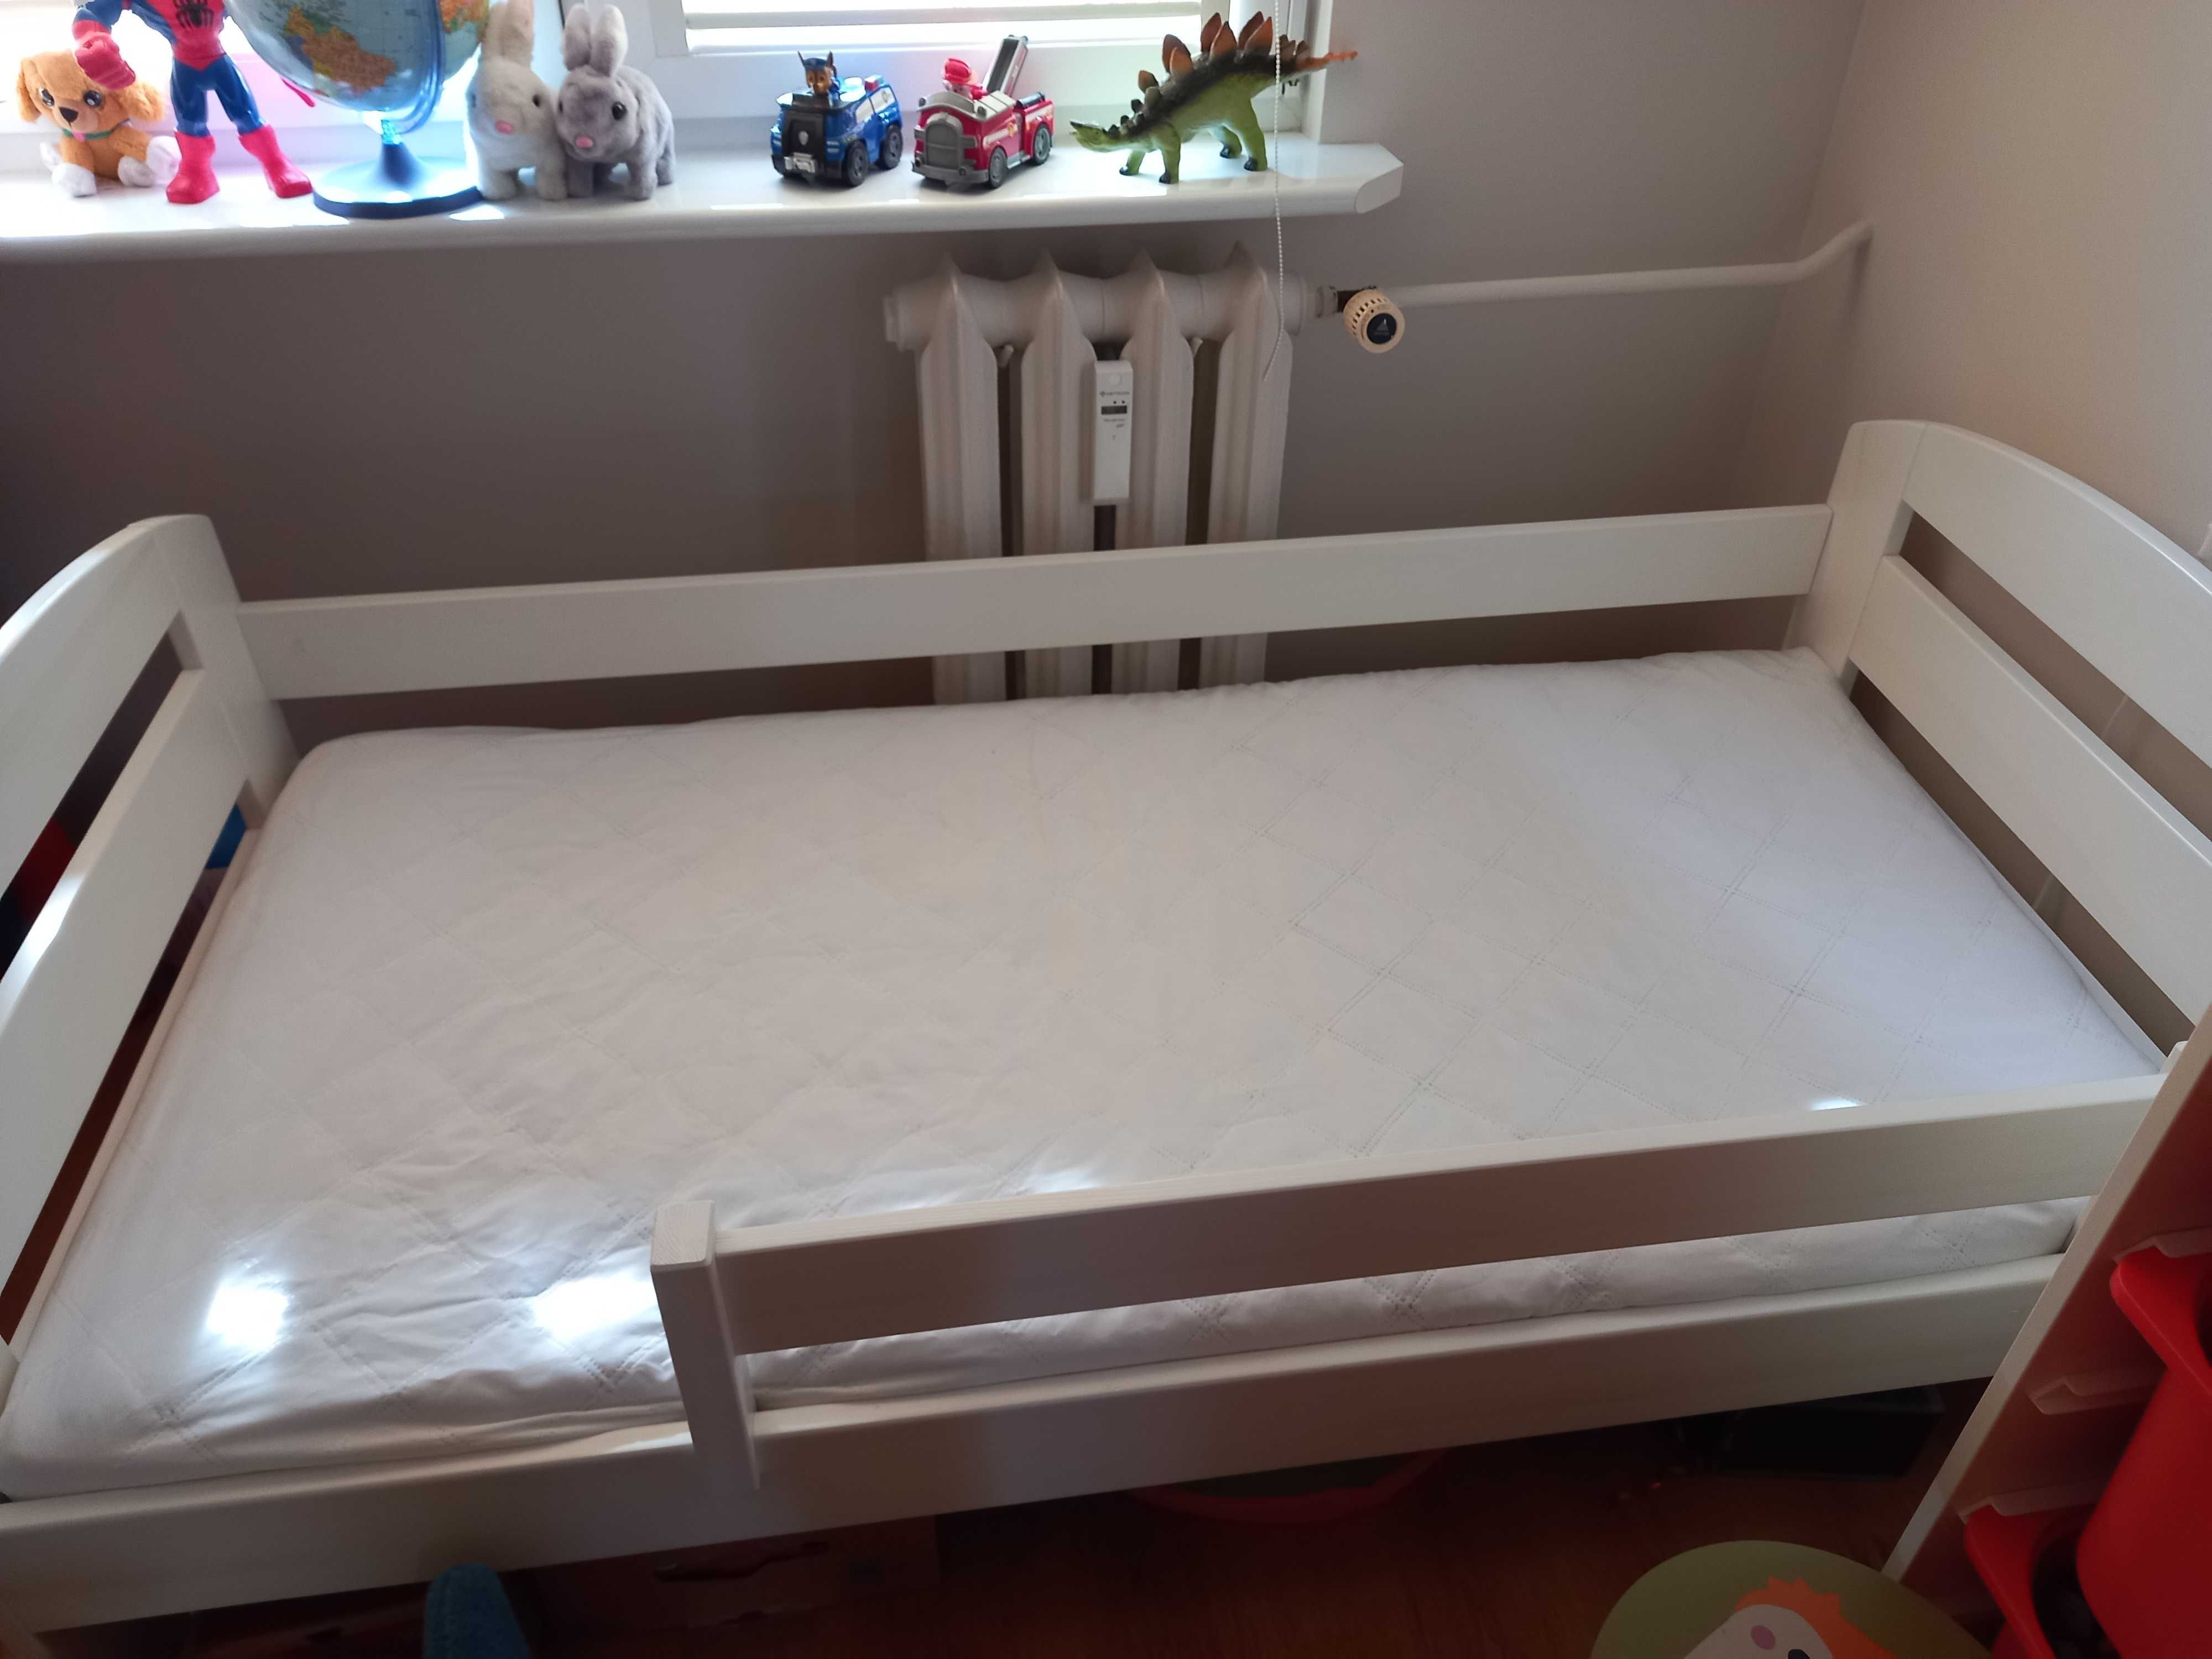 łóżko KAMI 160x80 Wróbel meble białe